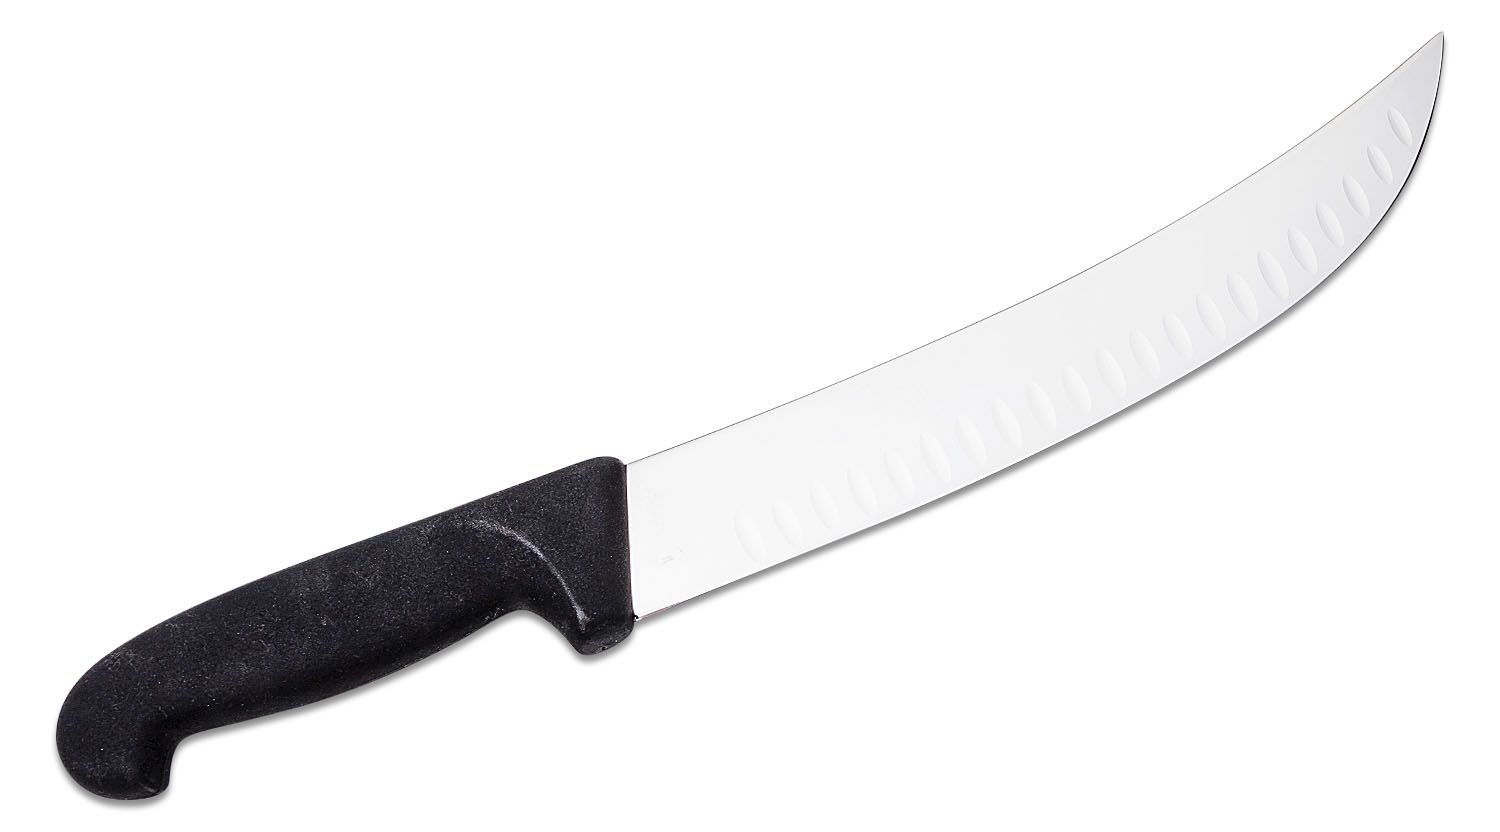 Forschner by Victorinox - 40539-40630-41534 - Cimeter Knife - 10, 12 or  14 - Curved Blade